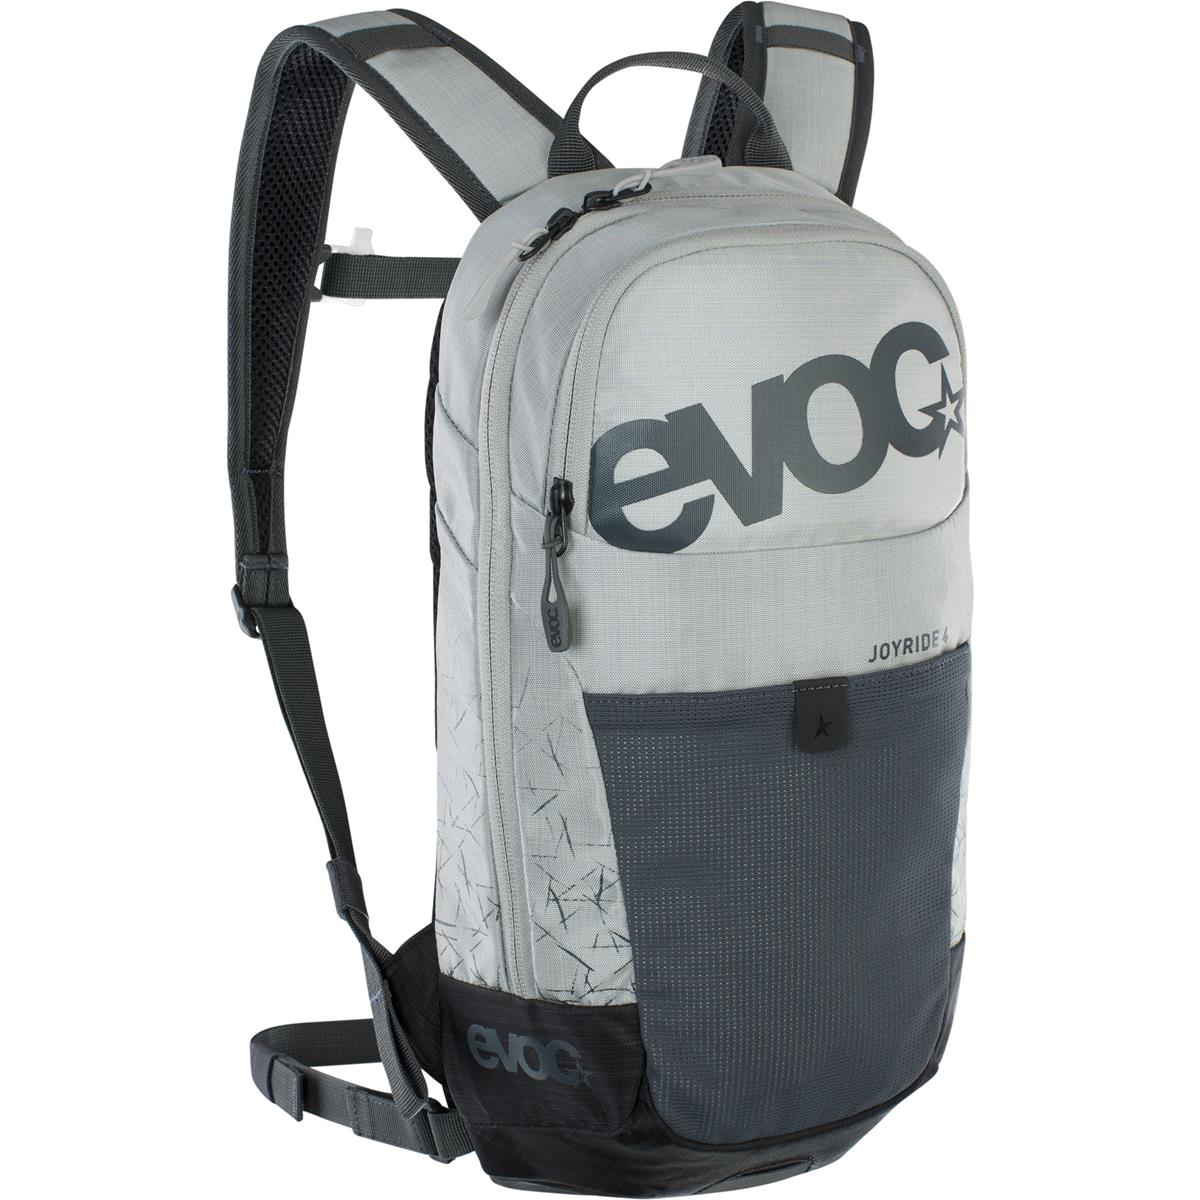 Evoc Kids Backpack Joyride Silver/Carbon Gray